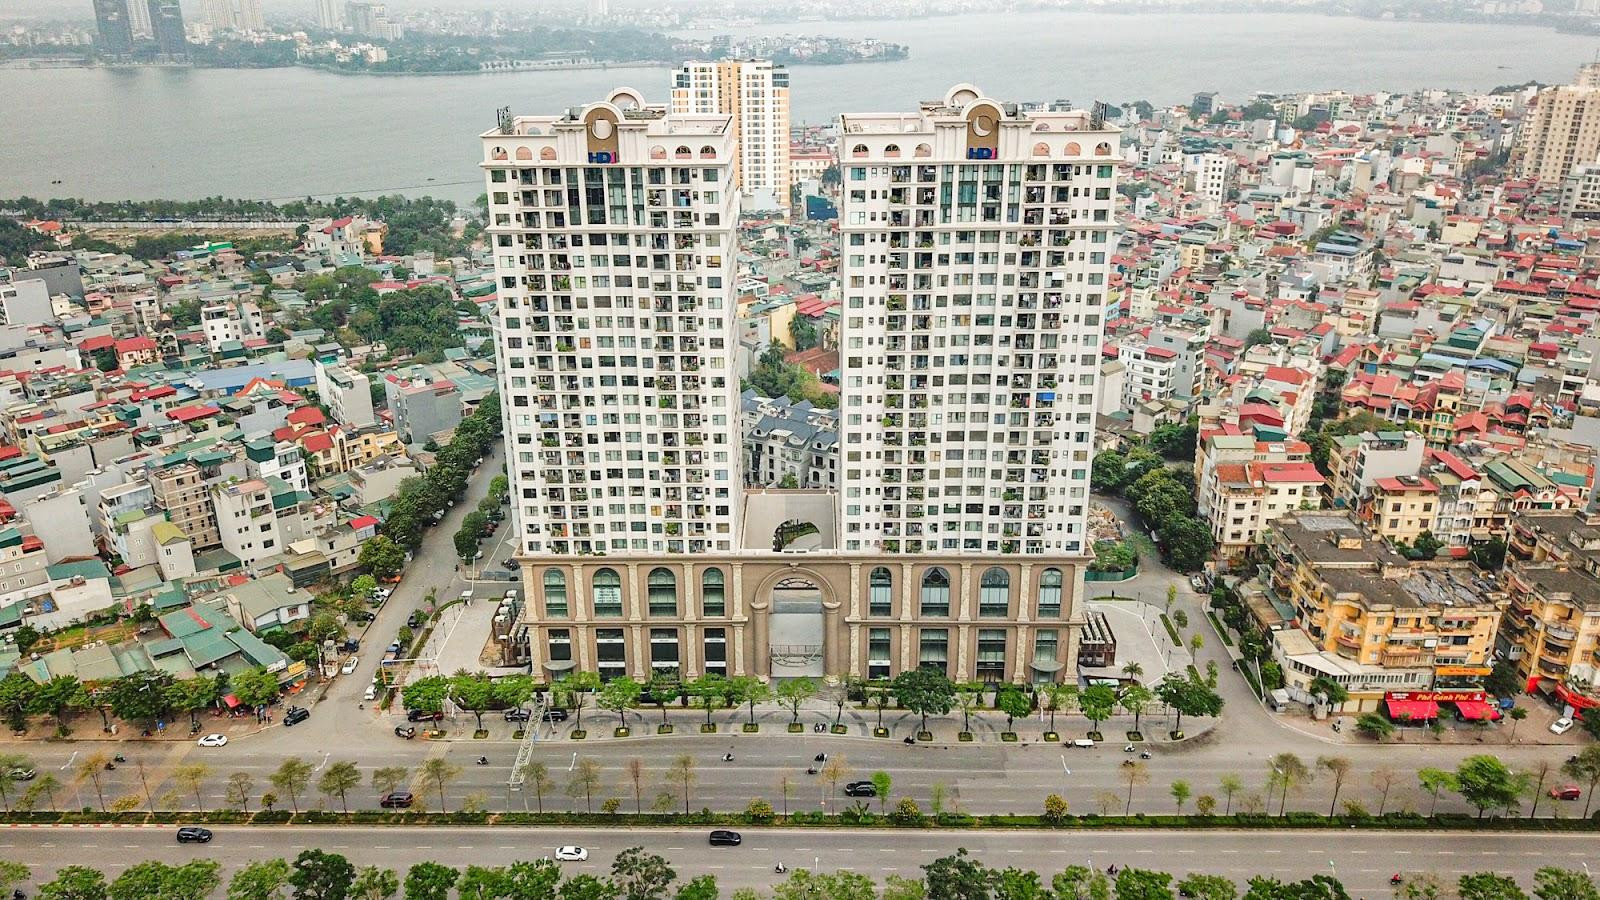 ‏[Photo Essay] Chung cư quanh TTTM đắt nhất thủ đô Lotte Mall Hanoi - Võ Chí Công đã hình thành mặt bằng giá mới lên đến 100 triệu đồng/m2 - Ảnh 6.